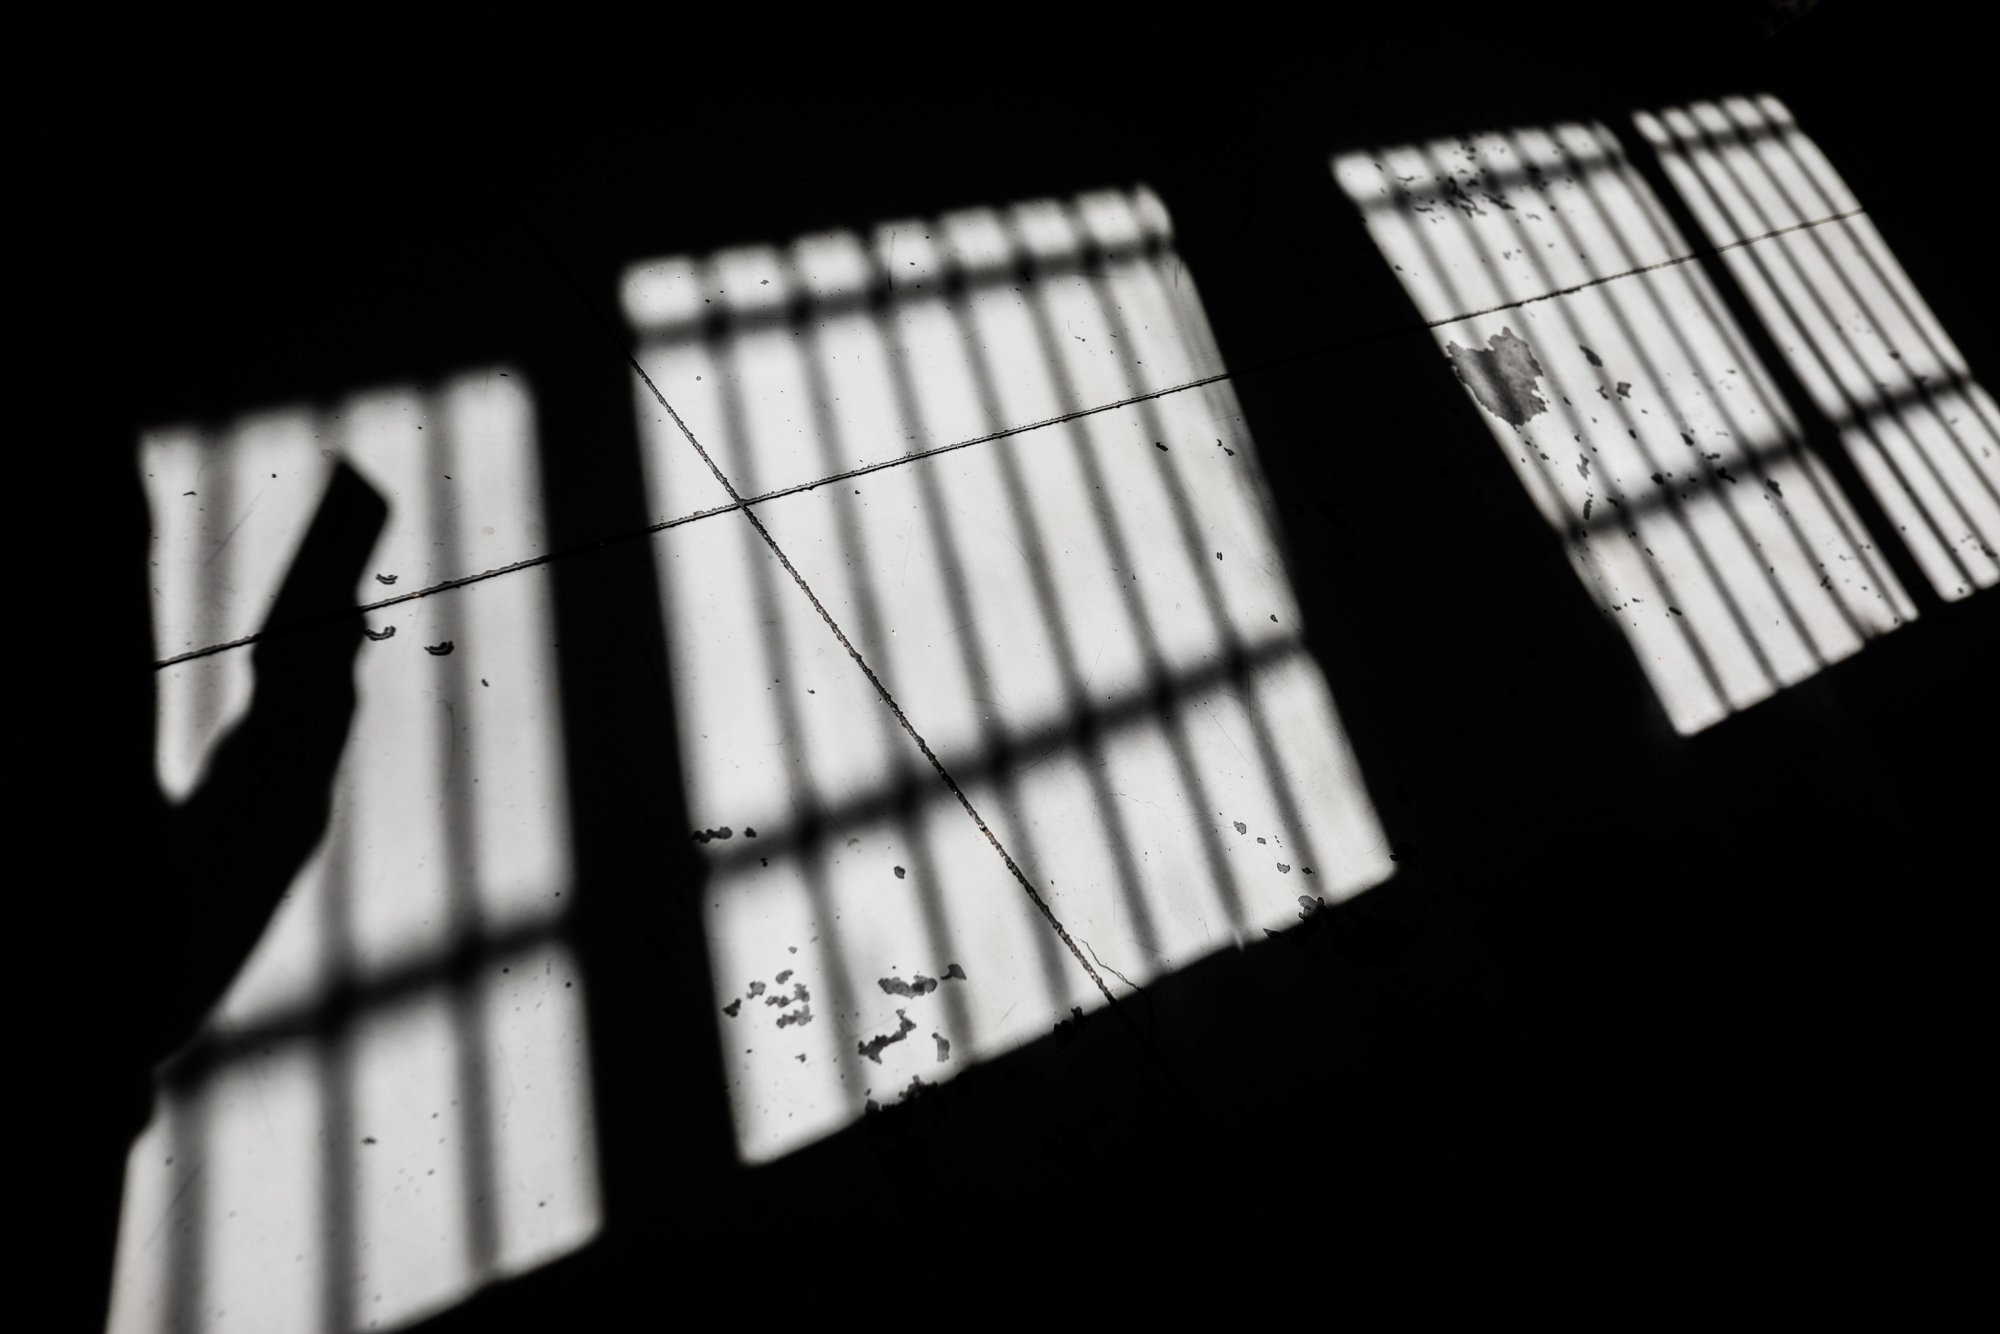 Φυλακές Κορυδαλλού: Σωφρονιστικός είχε κρύψει ναρκωτικά σε κατσαρόλα